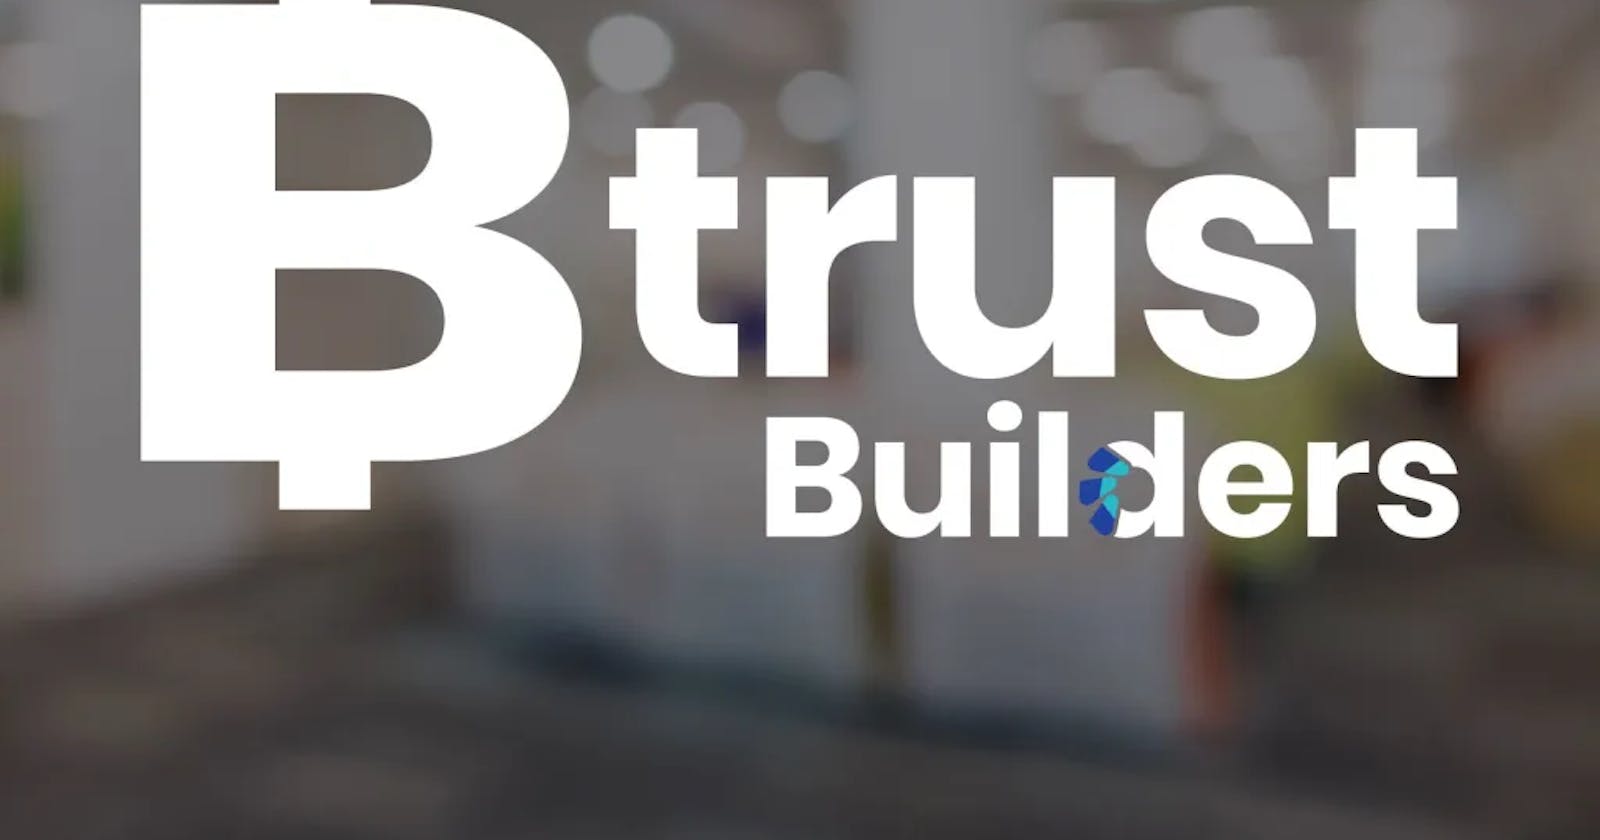 Tracer de nouveaux horizons : L'expérience de la bourse Btrust Builders